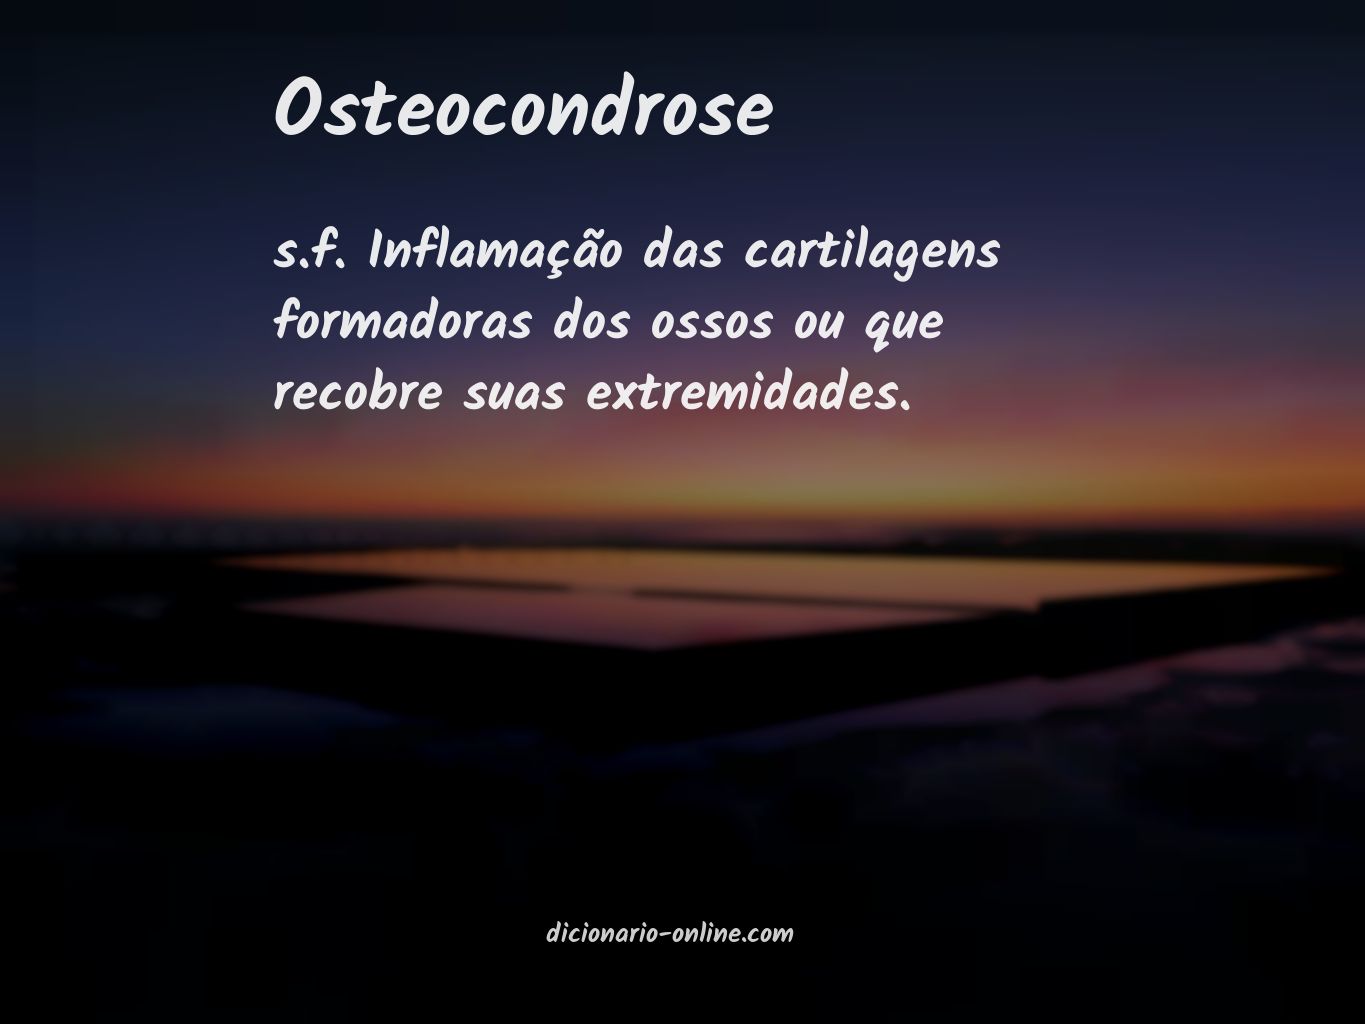 Significado de osteocondrose